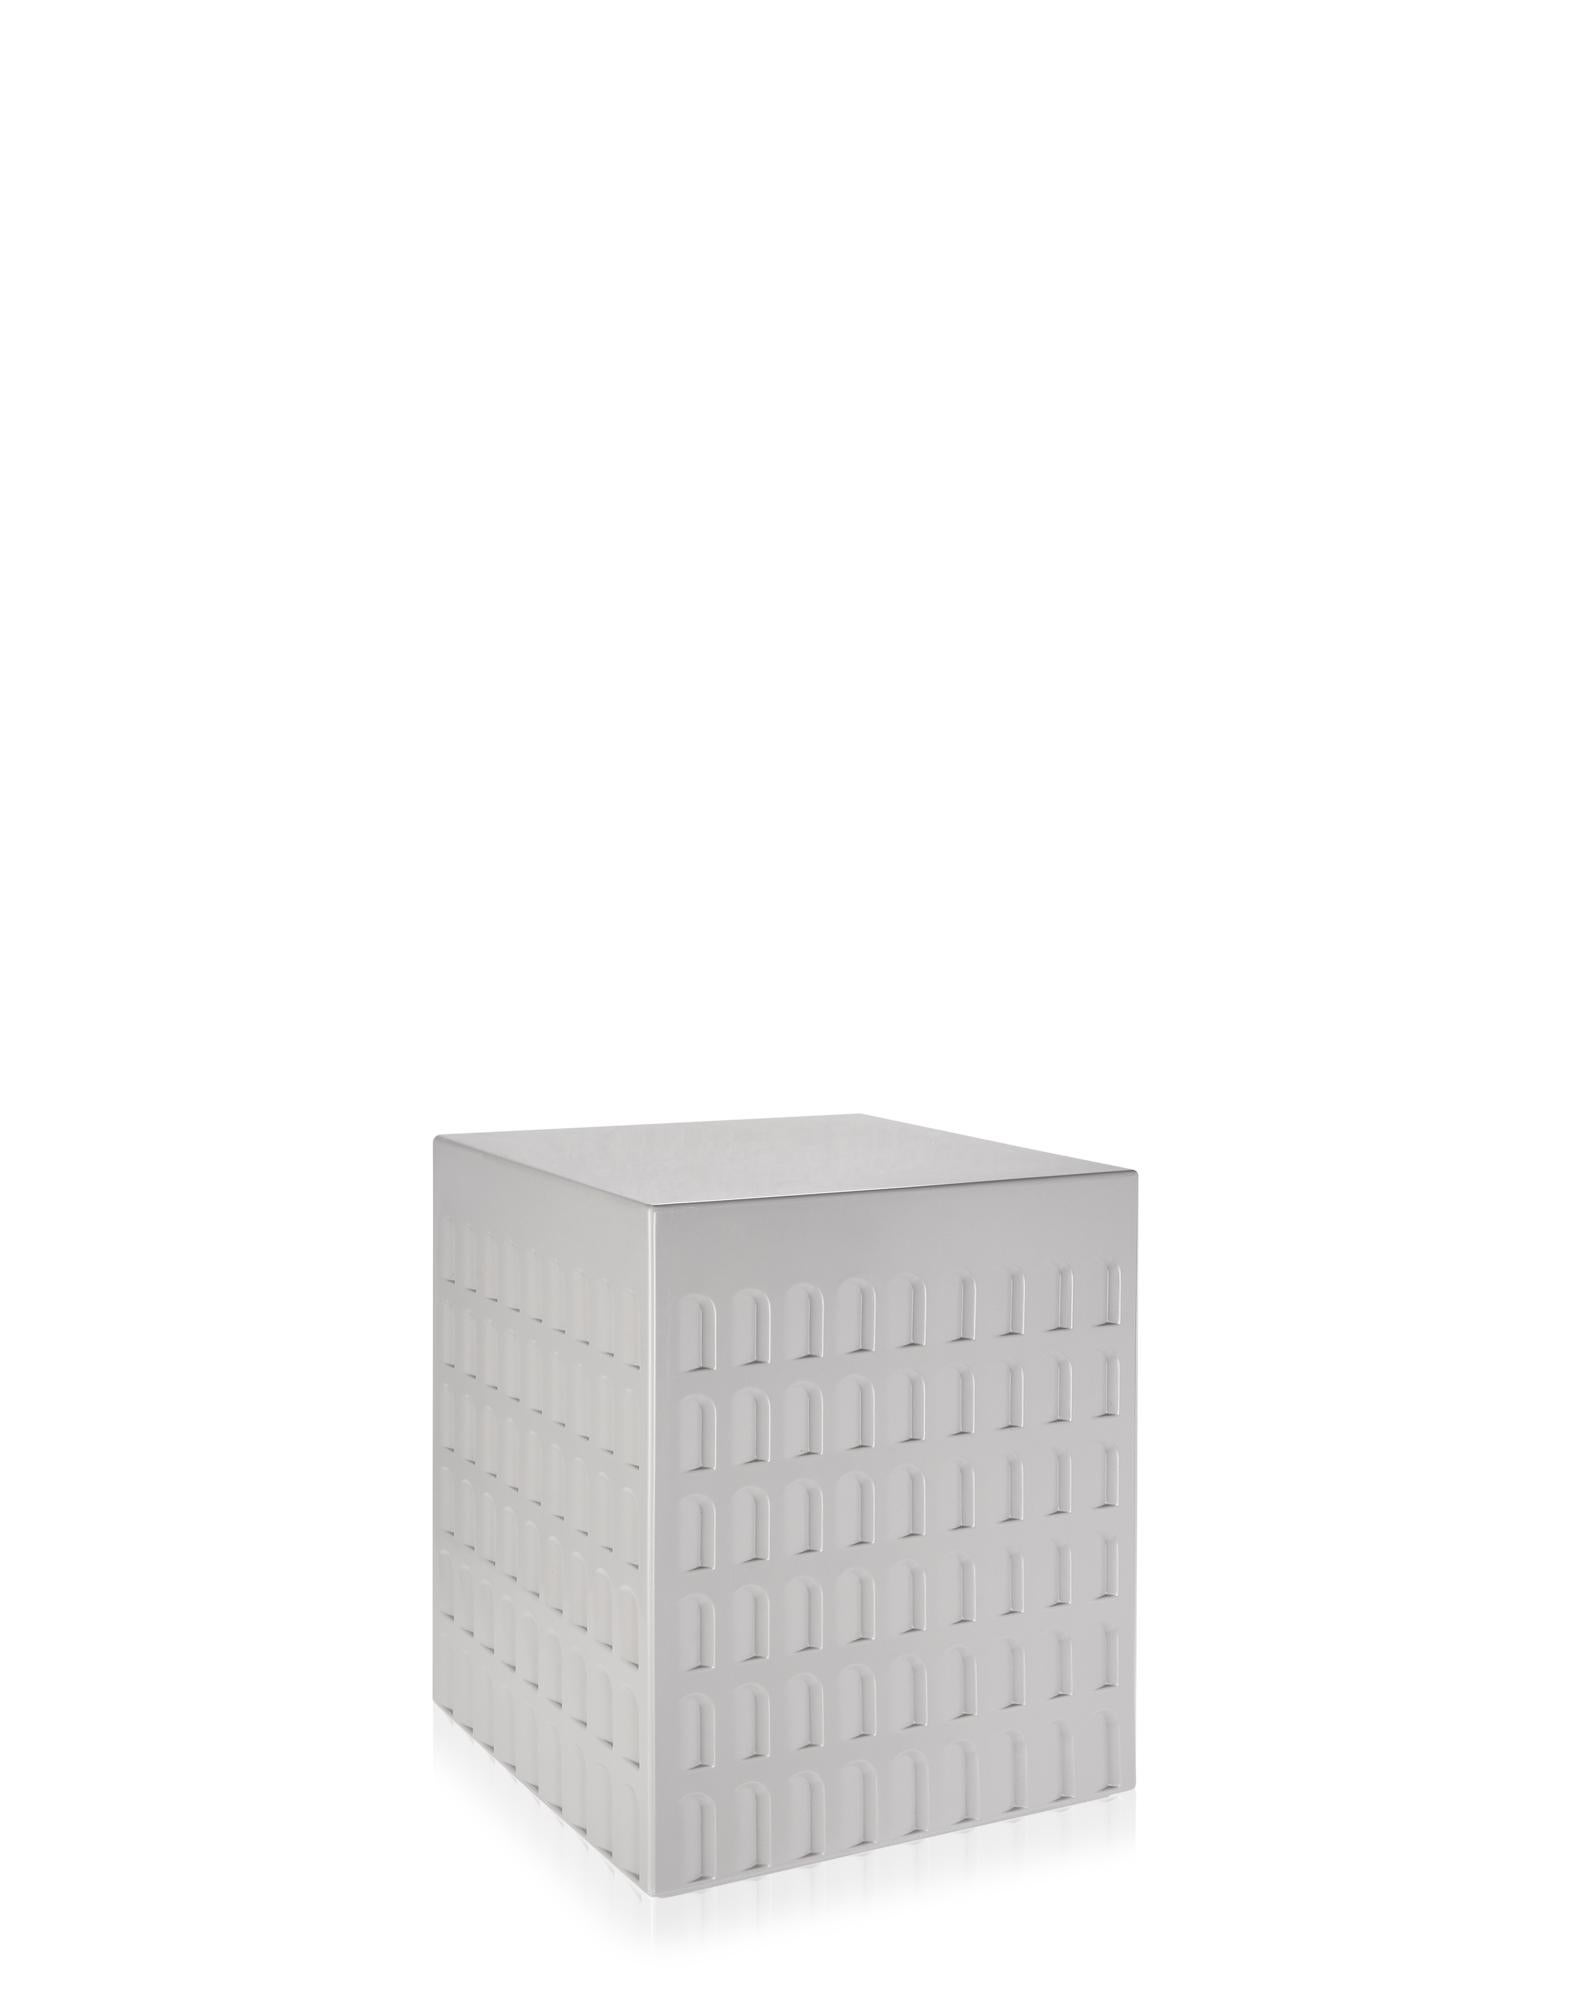 Le tabouret EUR de Fabio est un cube imprimé de formes et de géométries inspirées, à l'échelle, de l'architecture rationaliste italienne des années 1930 et 1940. Le tabouret peut être polyvalent en tant que siège ou support et s'adapte à une variété